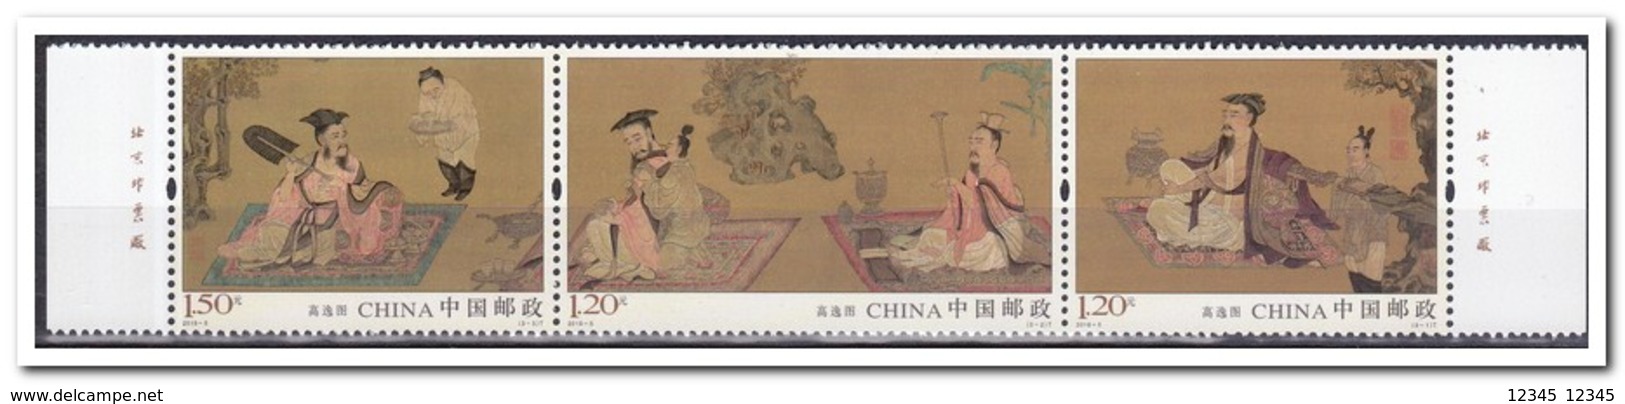 China 2016, Postfris MNH, Paintings - Ongebruikt